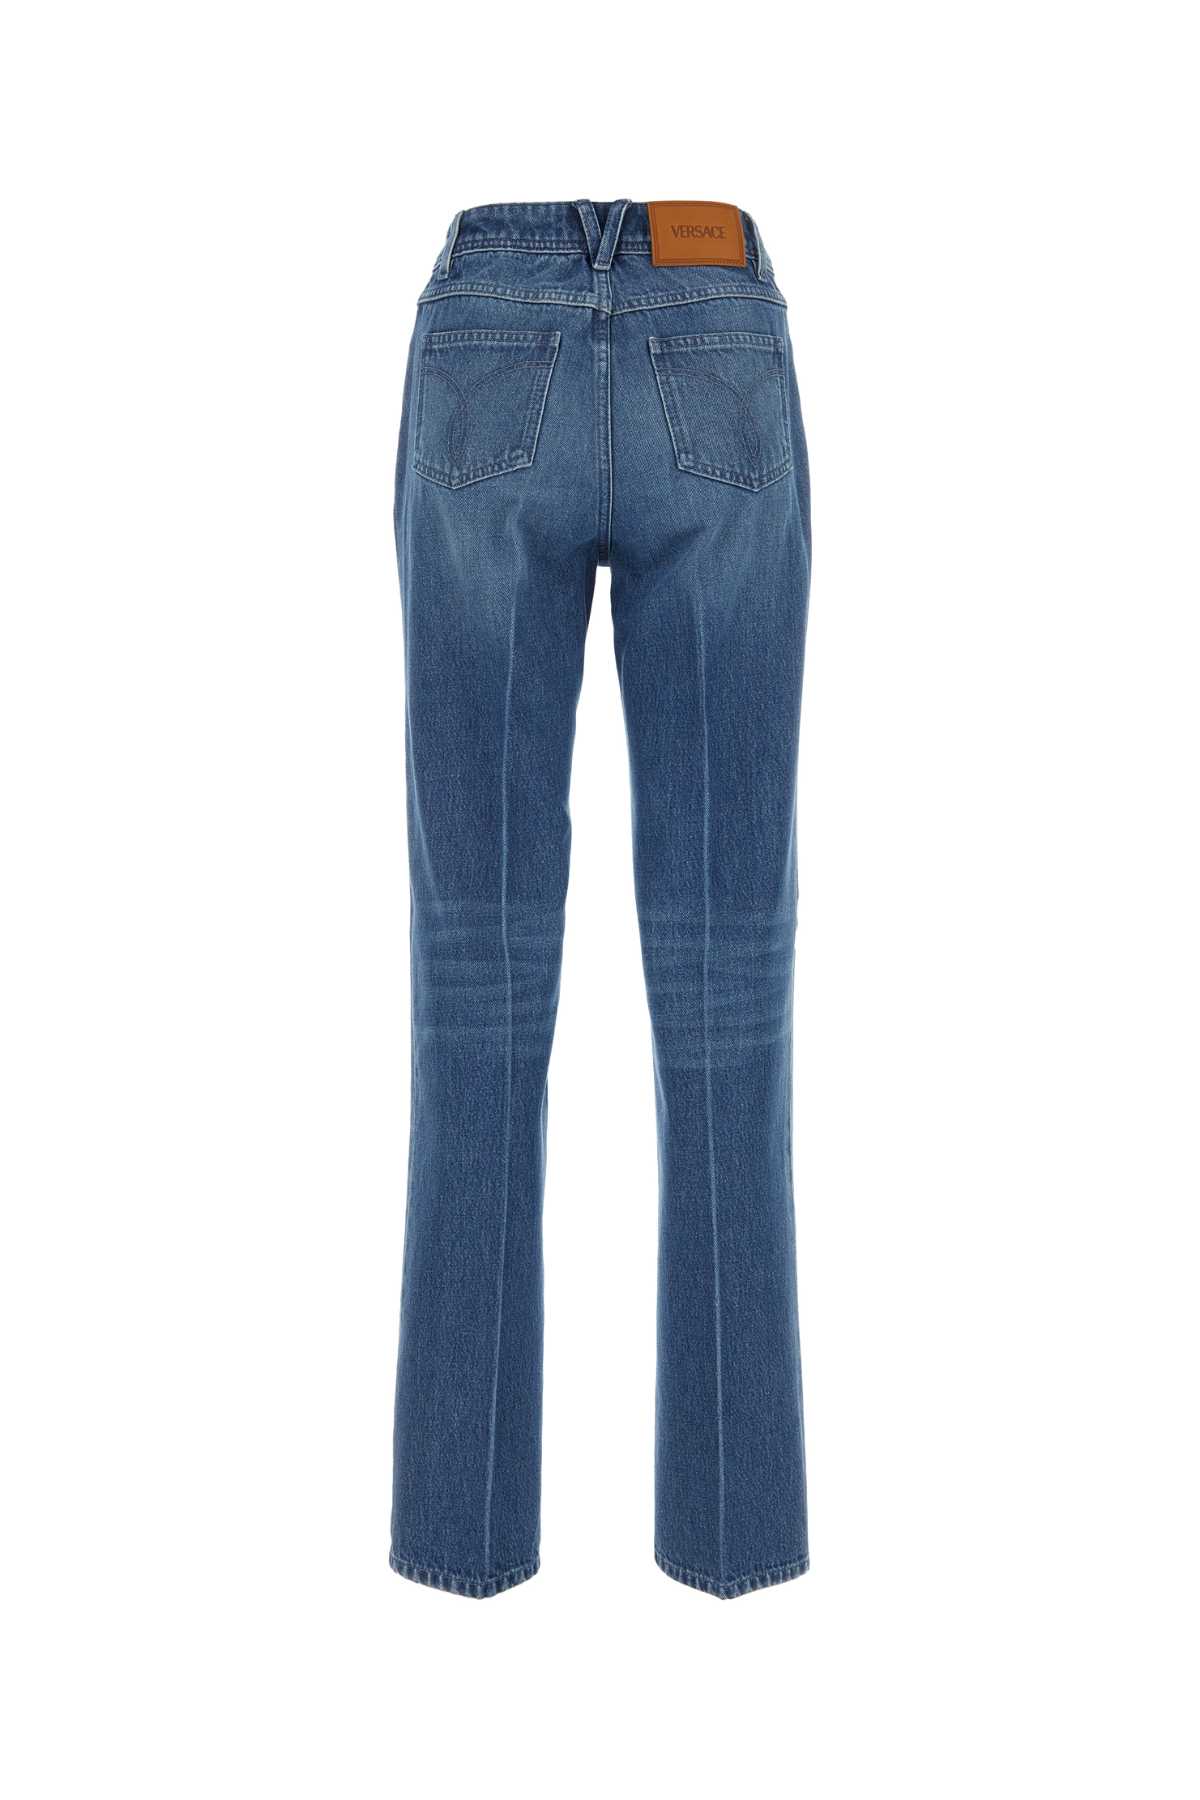 Versace Denim Jeans In 1d030